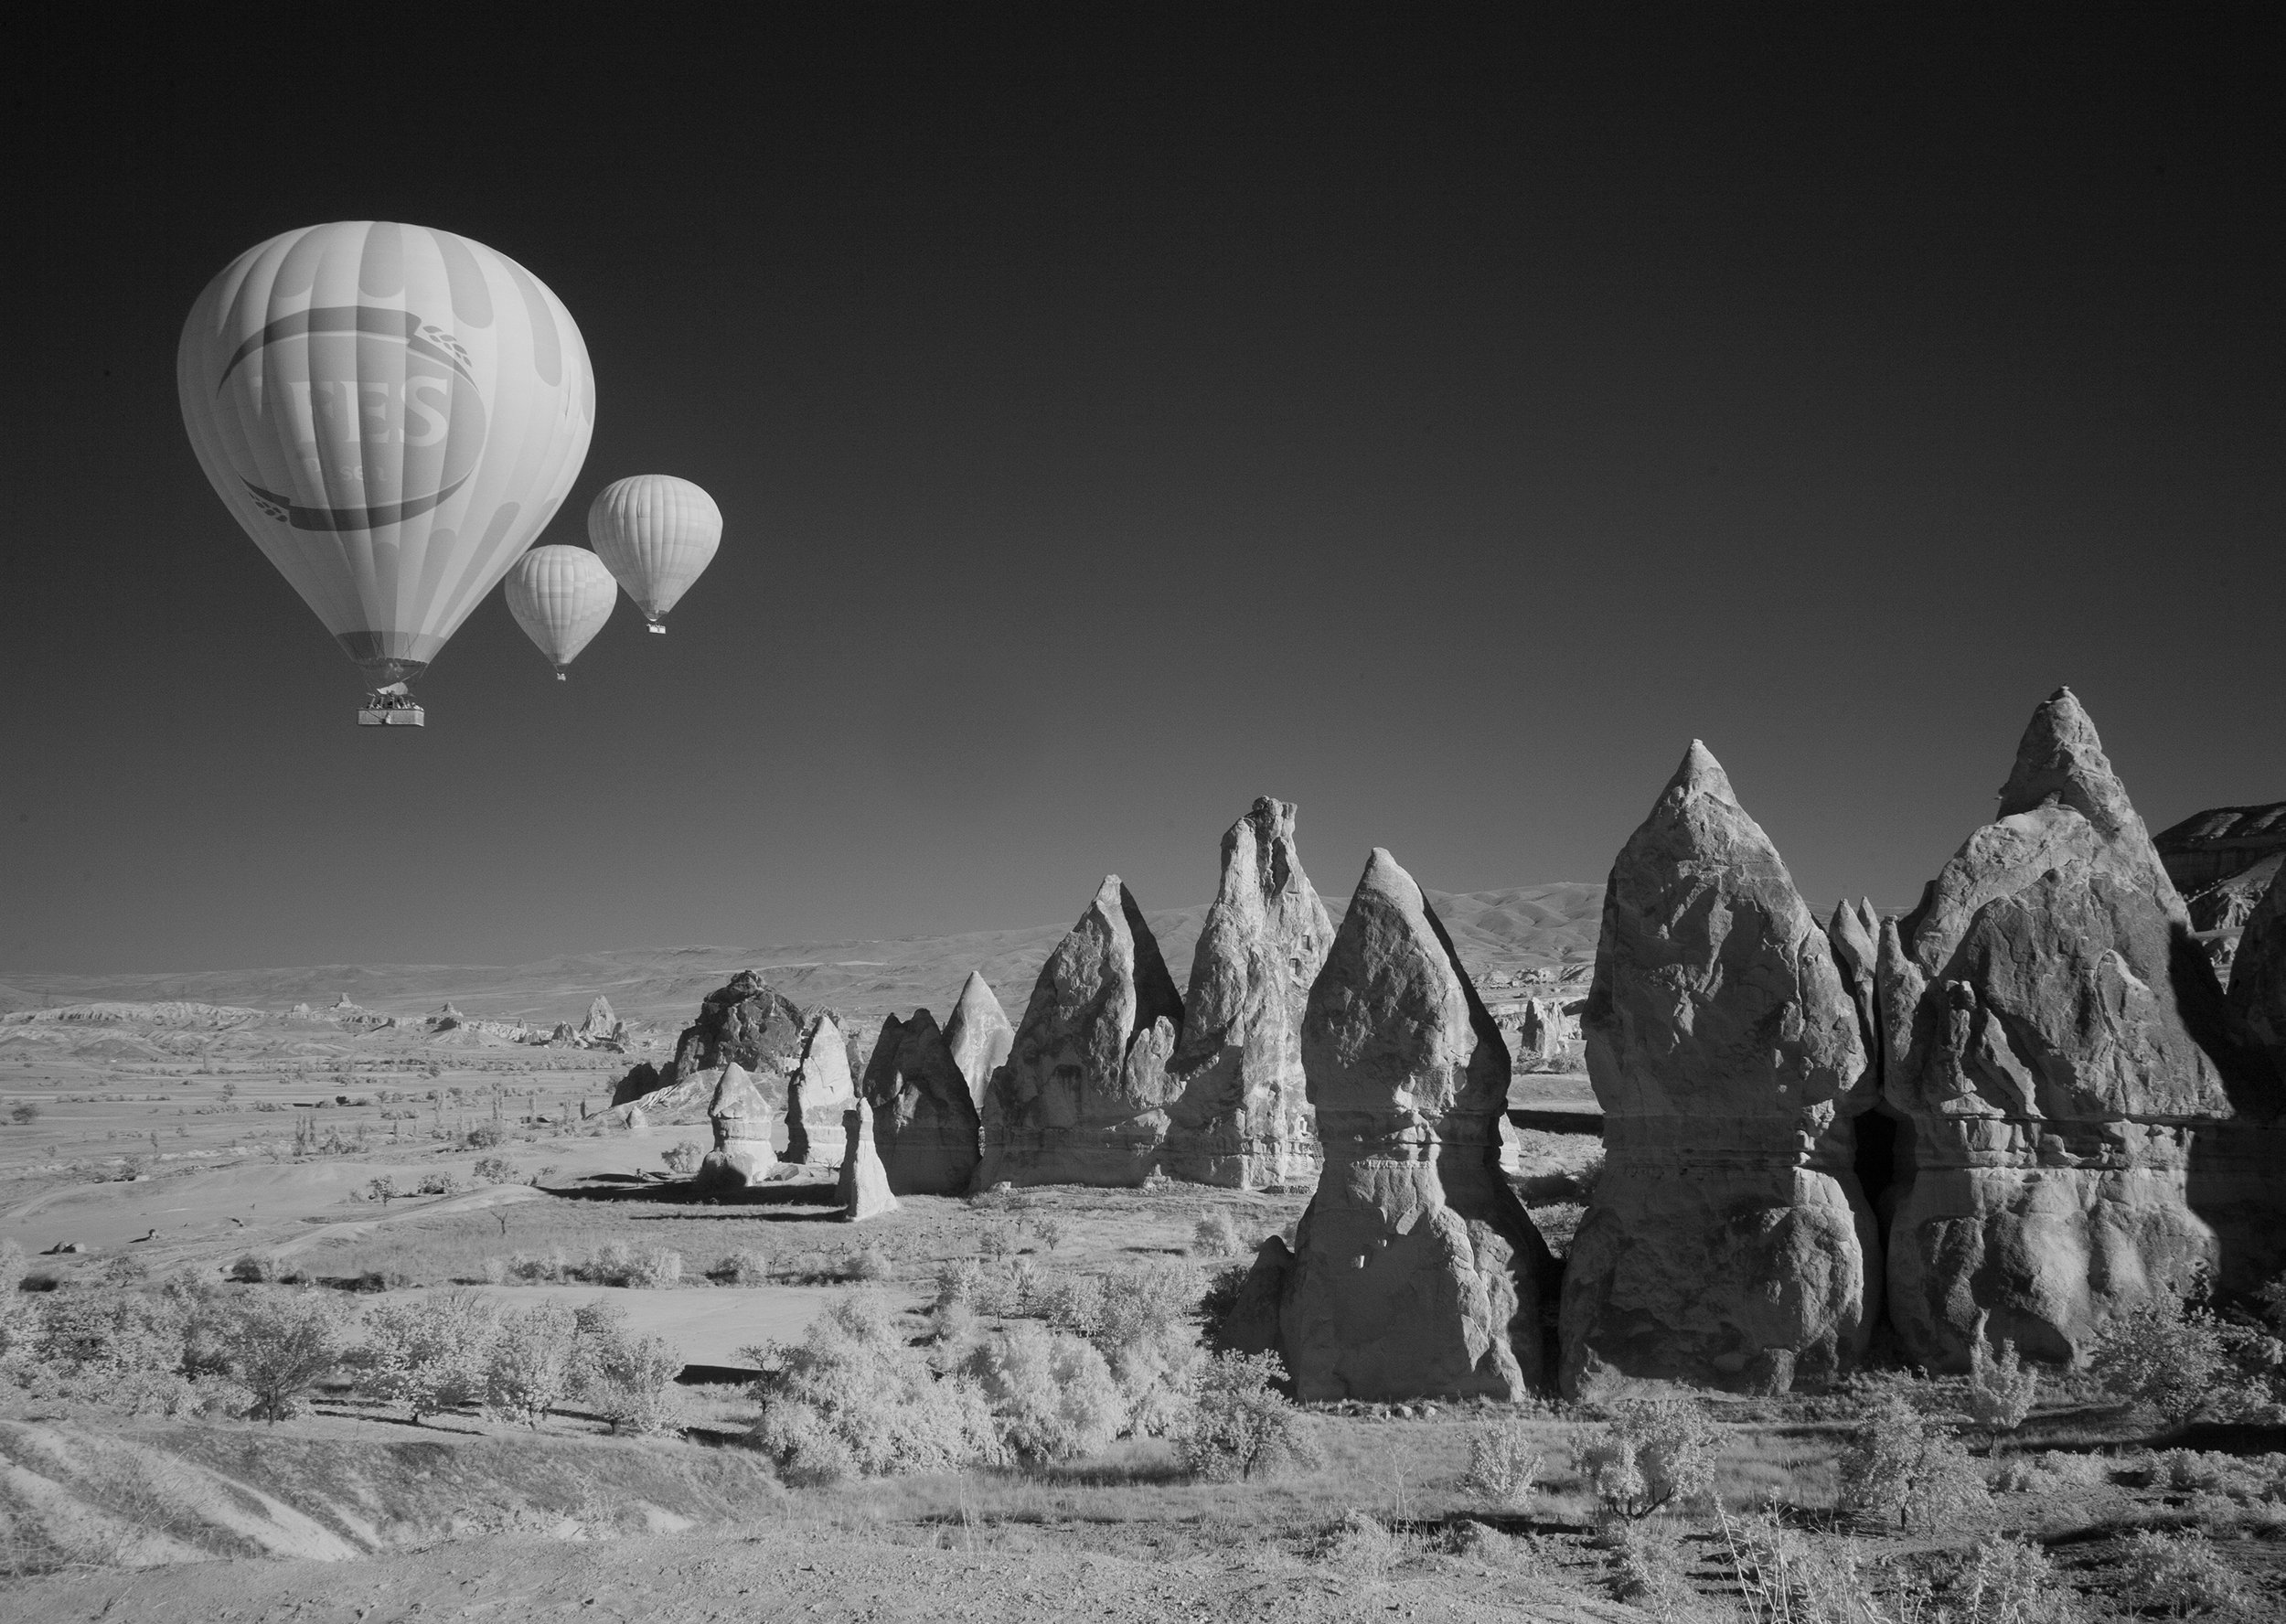 каппадокия,турция,шар,скалы,воздушный,путешествие,полёт, travel,balloon,cappadocia,fly,, Олег Грачёв